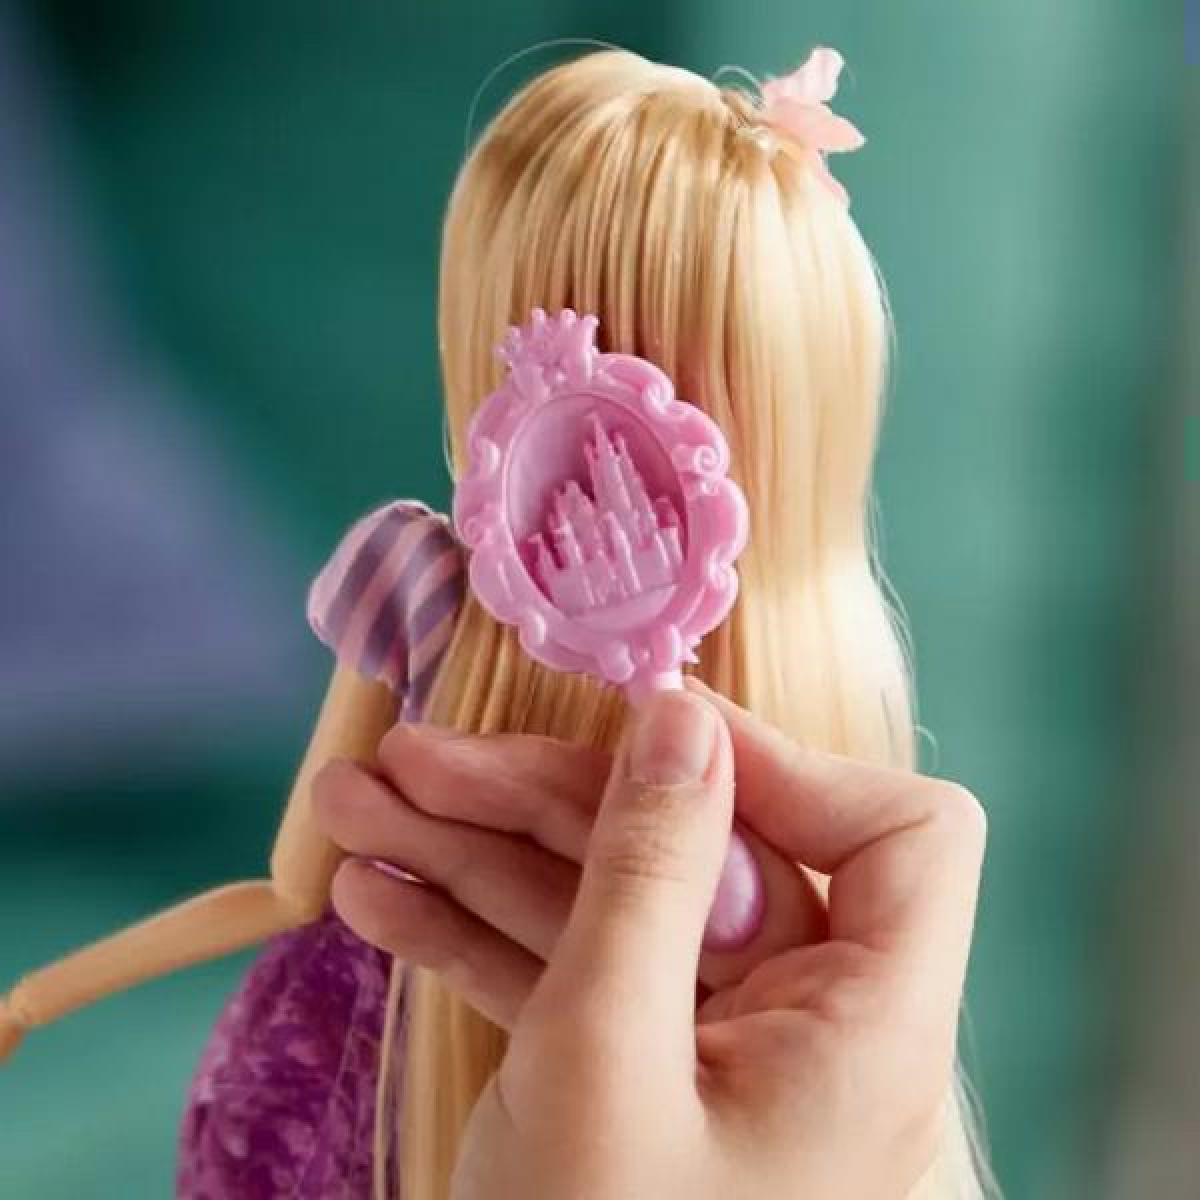 Disney Rapunzel Κλασική Κούκλα 29cm Με αξεσουάρ 3 ετών και Πάνω